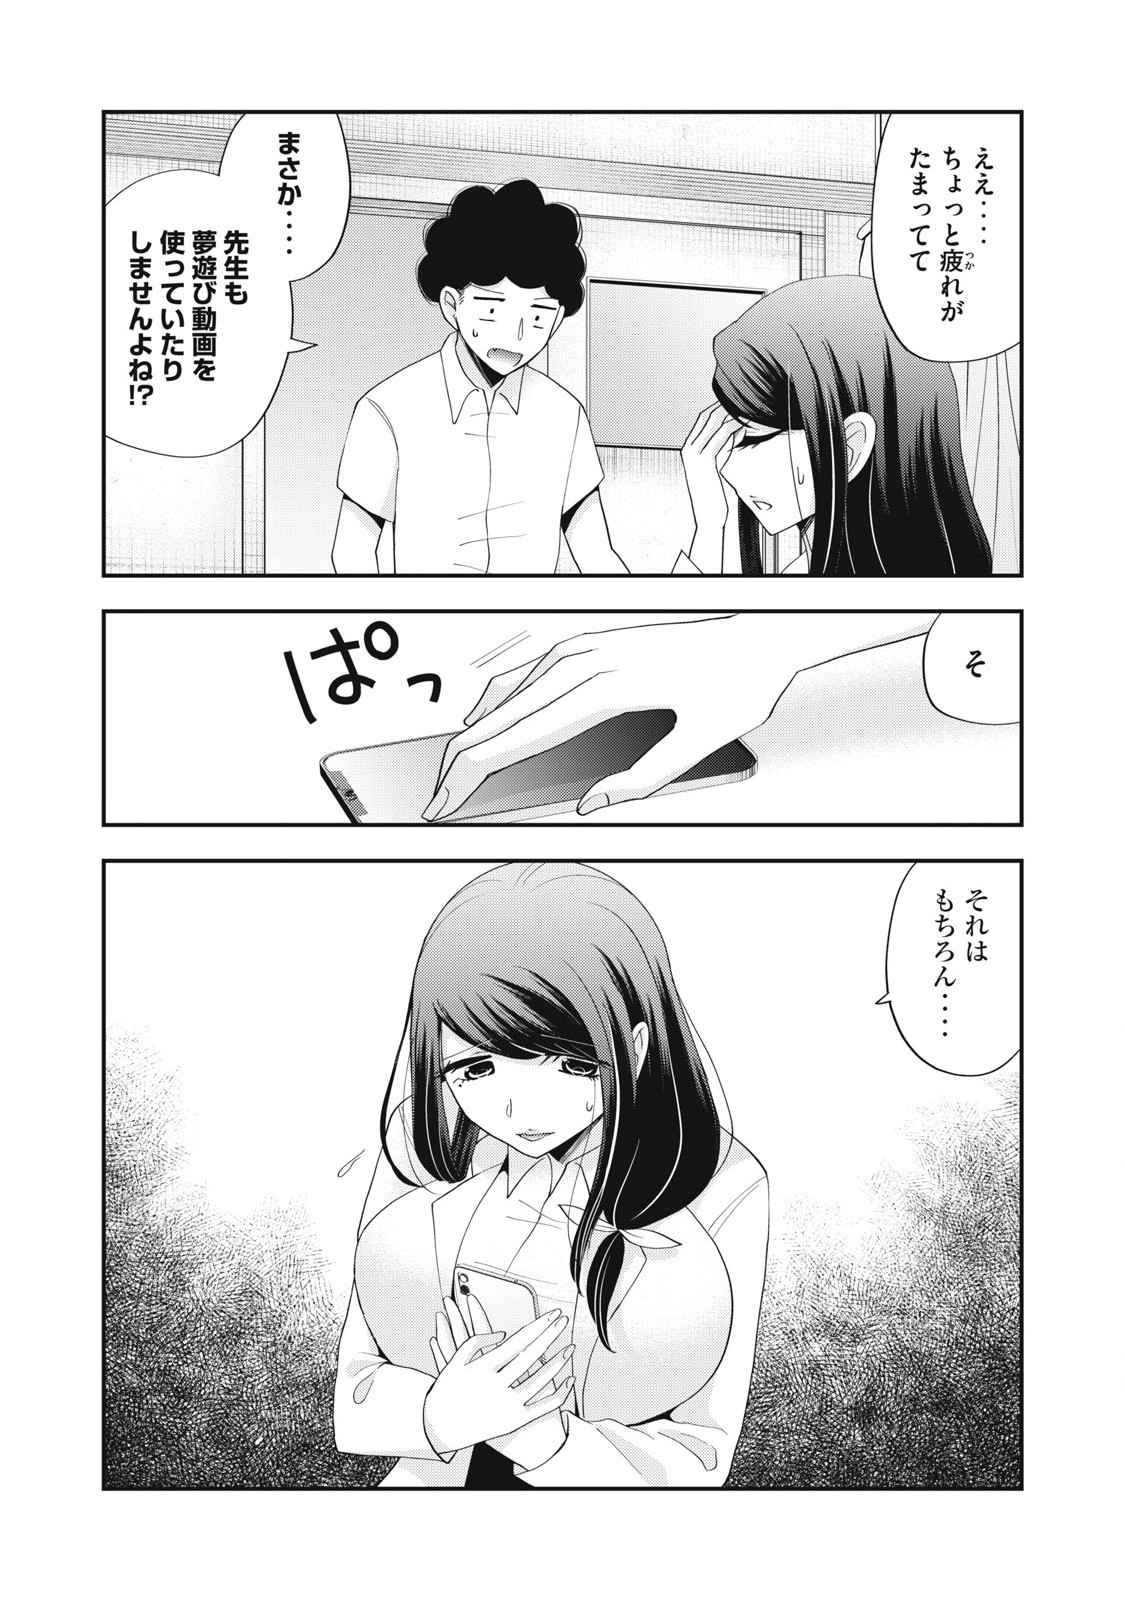 Yumeutsutsu no Hana no Sono - Chapter 25 - Page 2